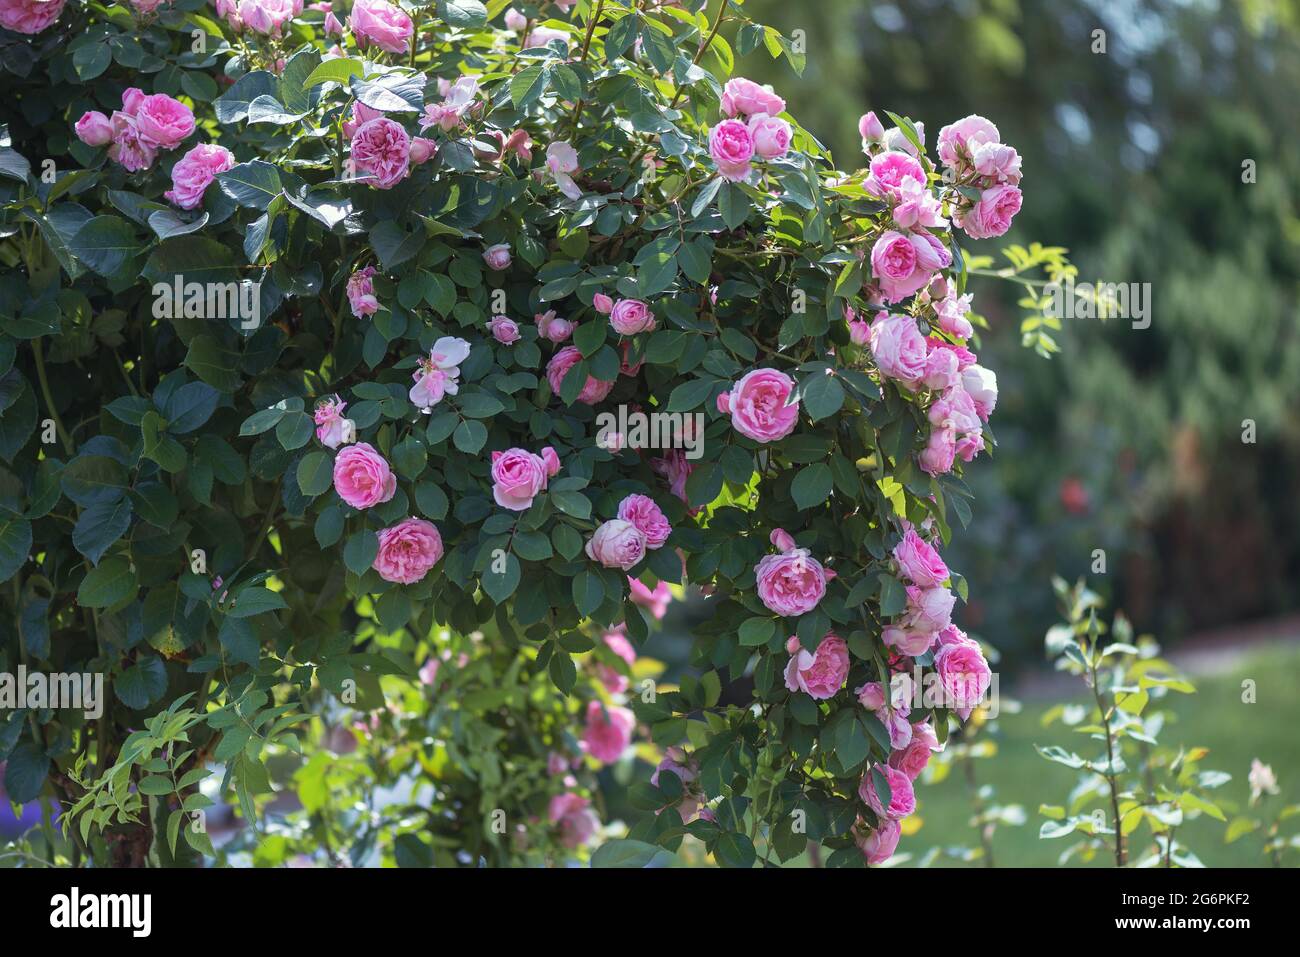 La rose du patrimoine est l'une des roses anglaises les plus belles et les plus populaires. Les fleurs sont parfaitement coupées et de taille moyenne. Banque D'Images